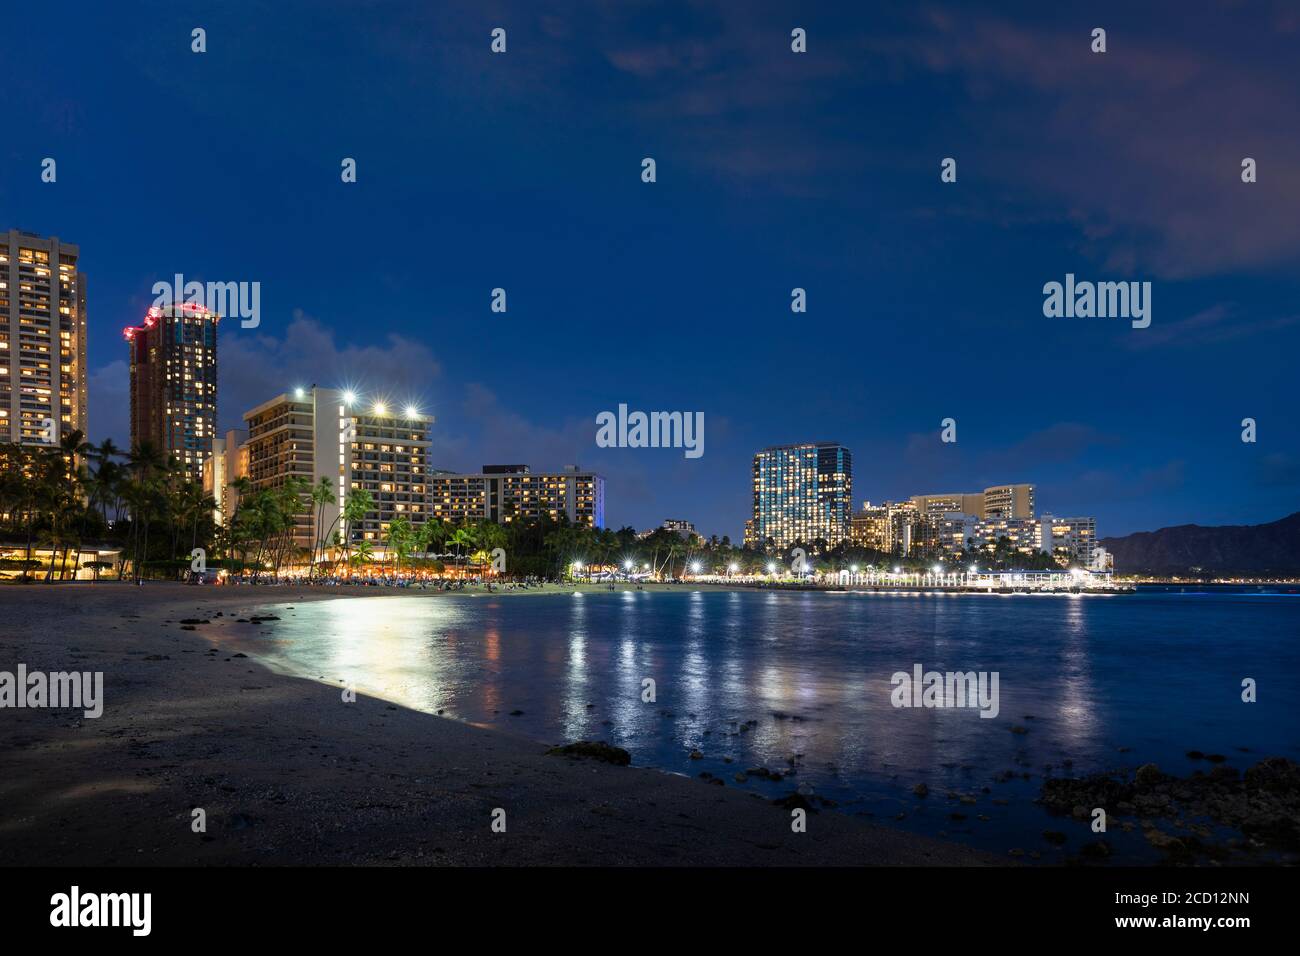 Waikiki al tramonto, con edifici illuminati e tranquillo lungomare; Honolulu, Oahu, Hawaii, Stati Uniti d'America Foto Stock